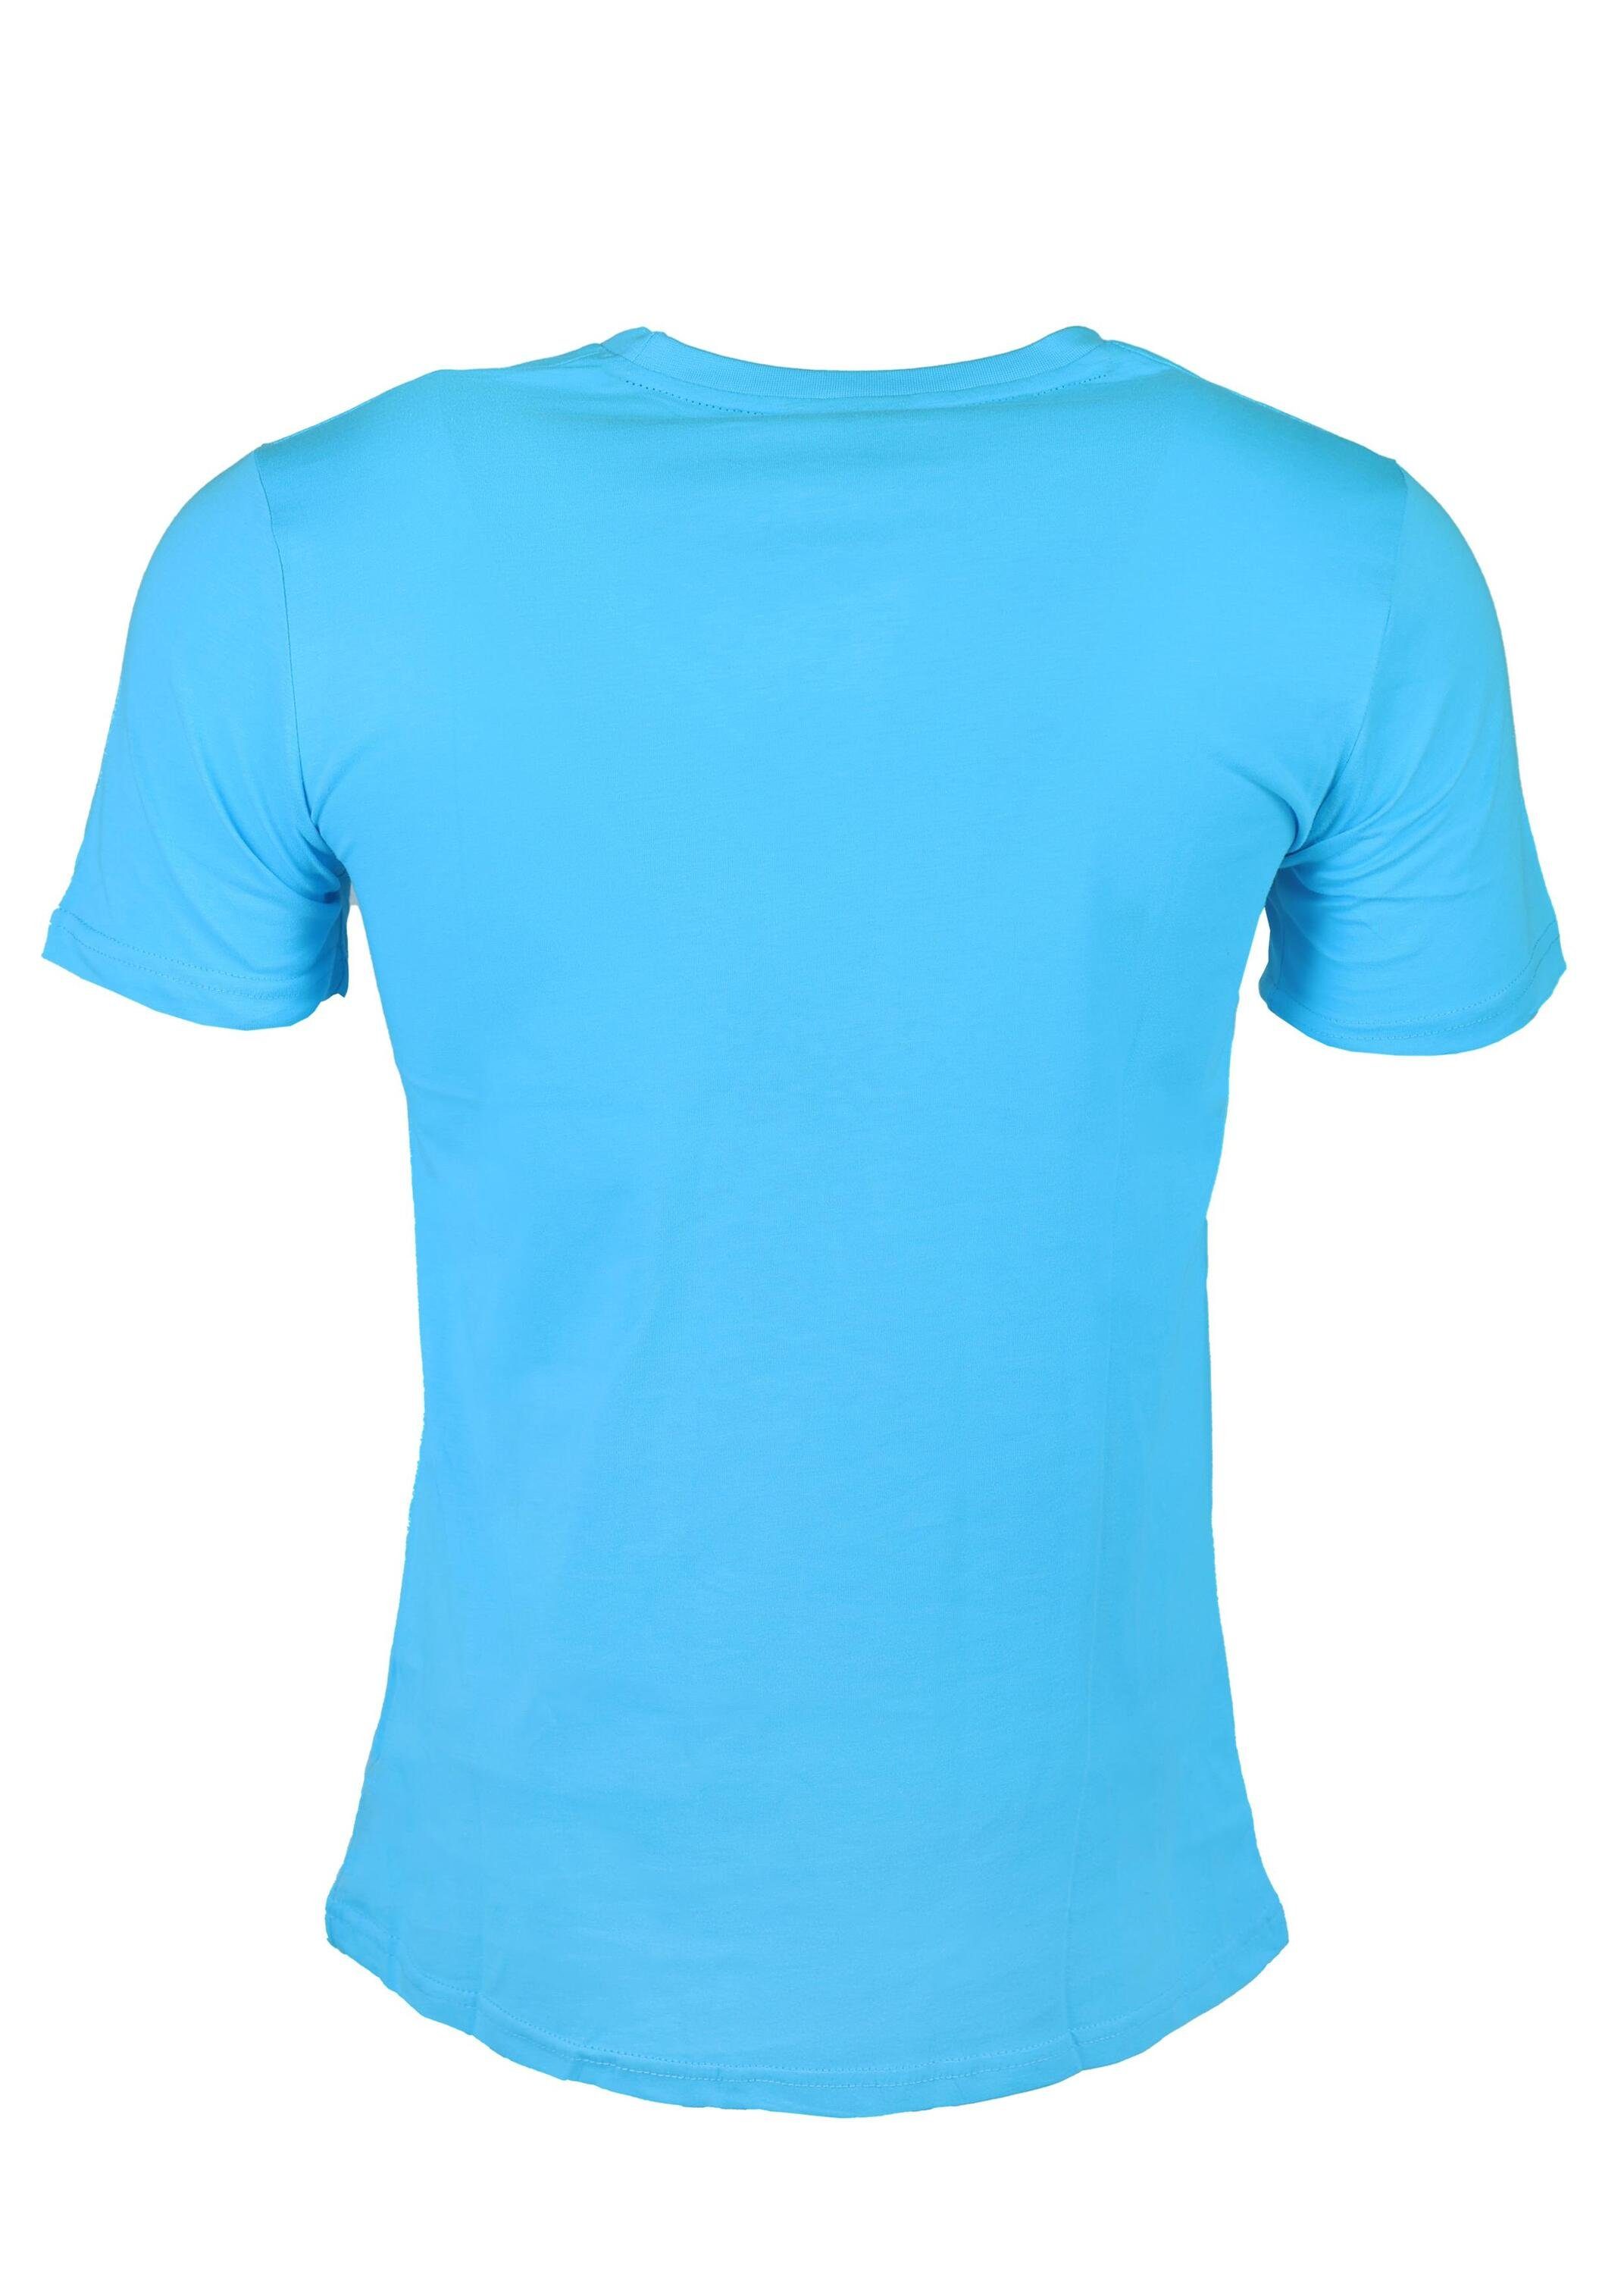 Jugend T-Shirt Blue aus Karl Kinder, Fußball, für Baumwolle, FuPer